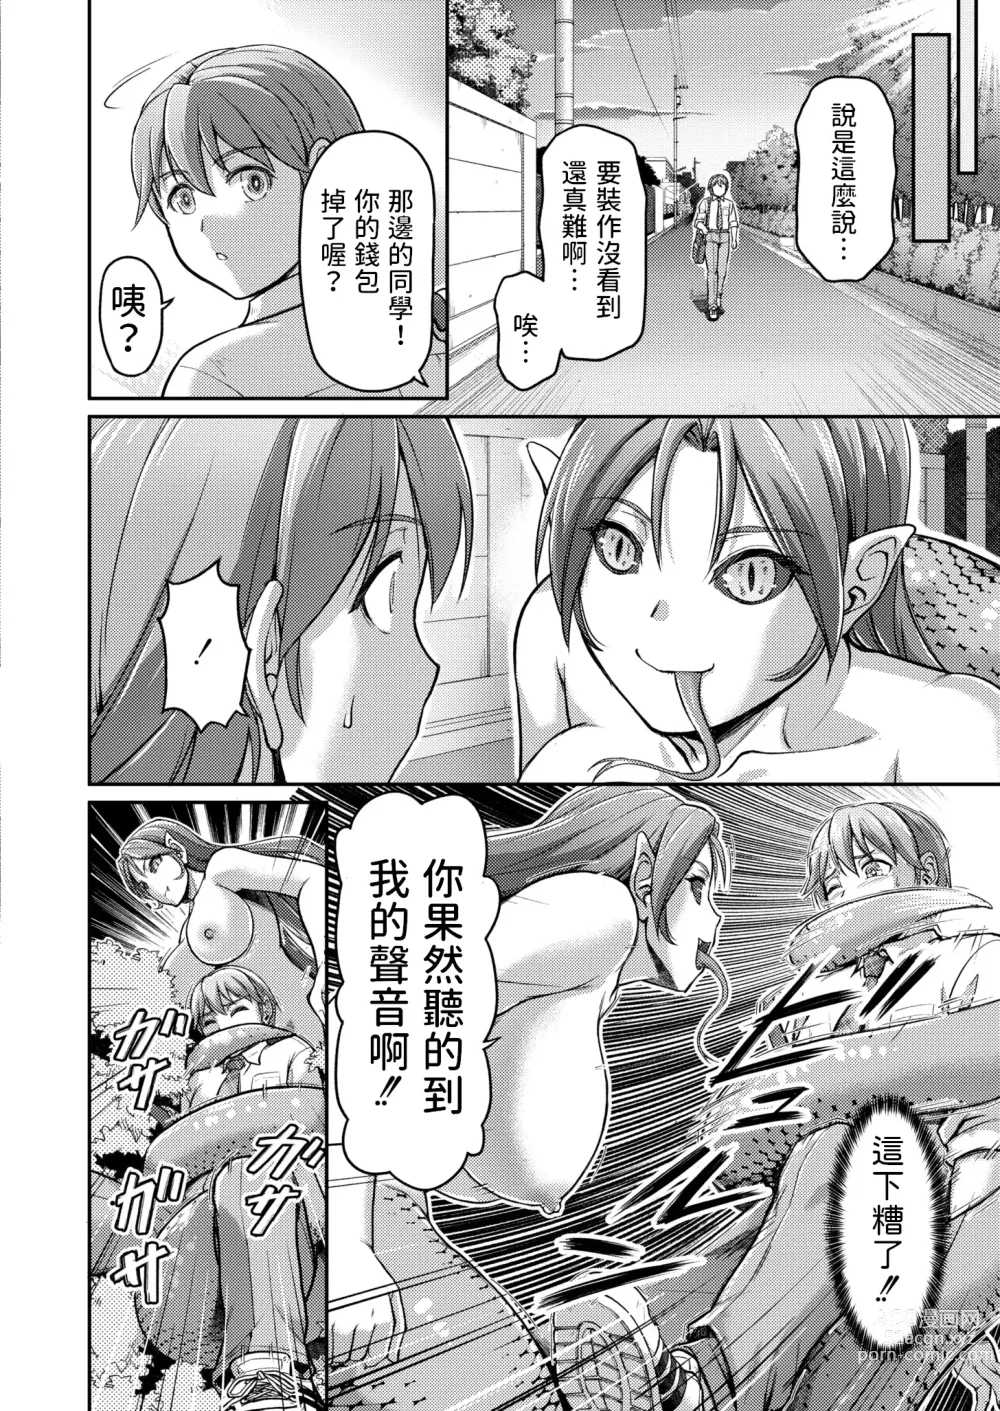 Page 4 of manga Youjokan no Nichijou Saishuuwa